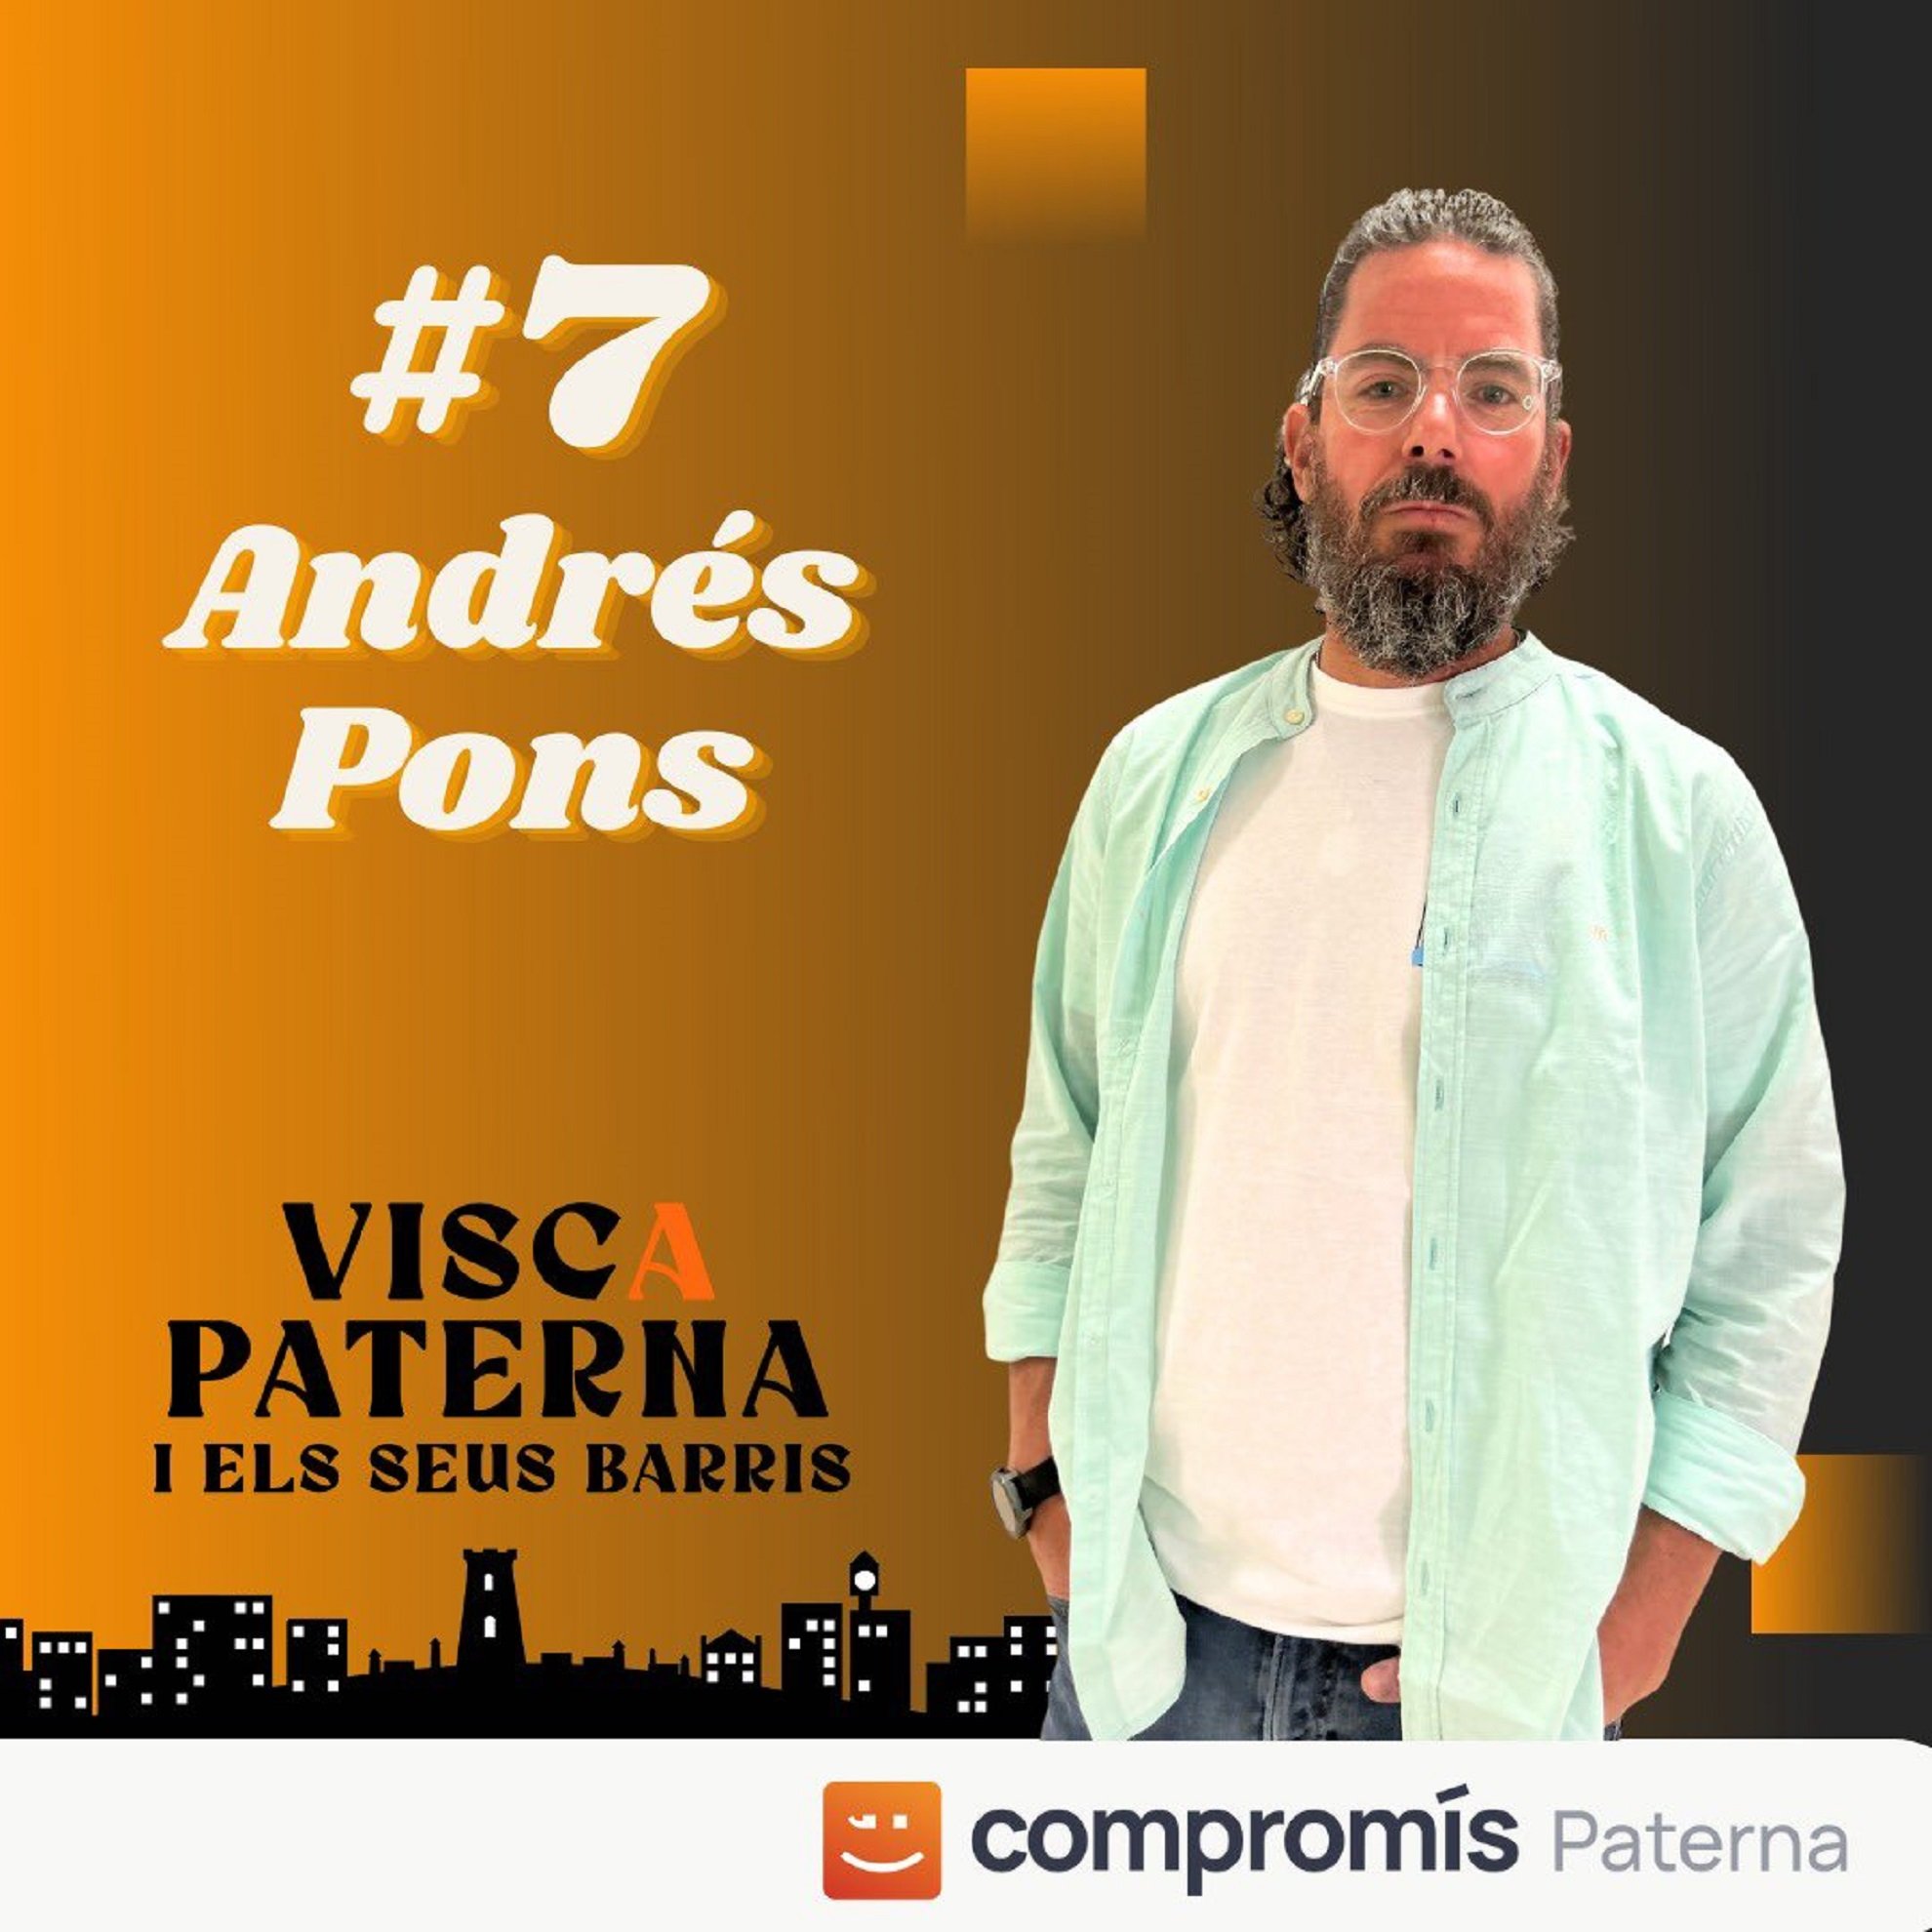 Muere de forma repentina Andrés Pons, candidato de Compromís, a los 47 años